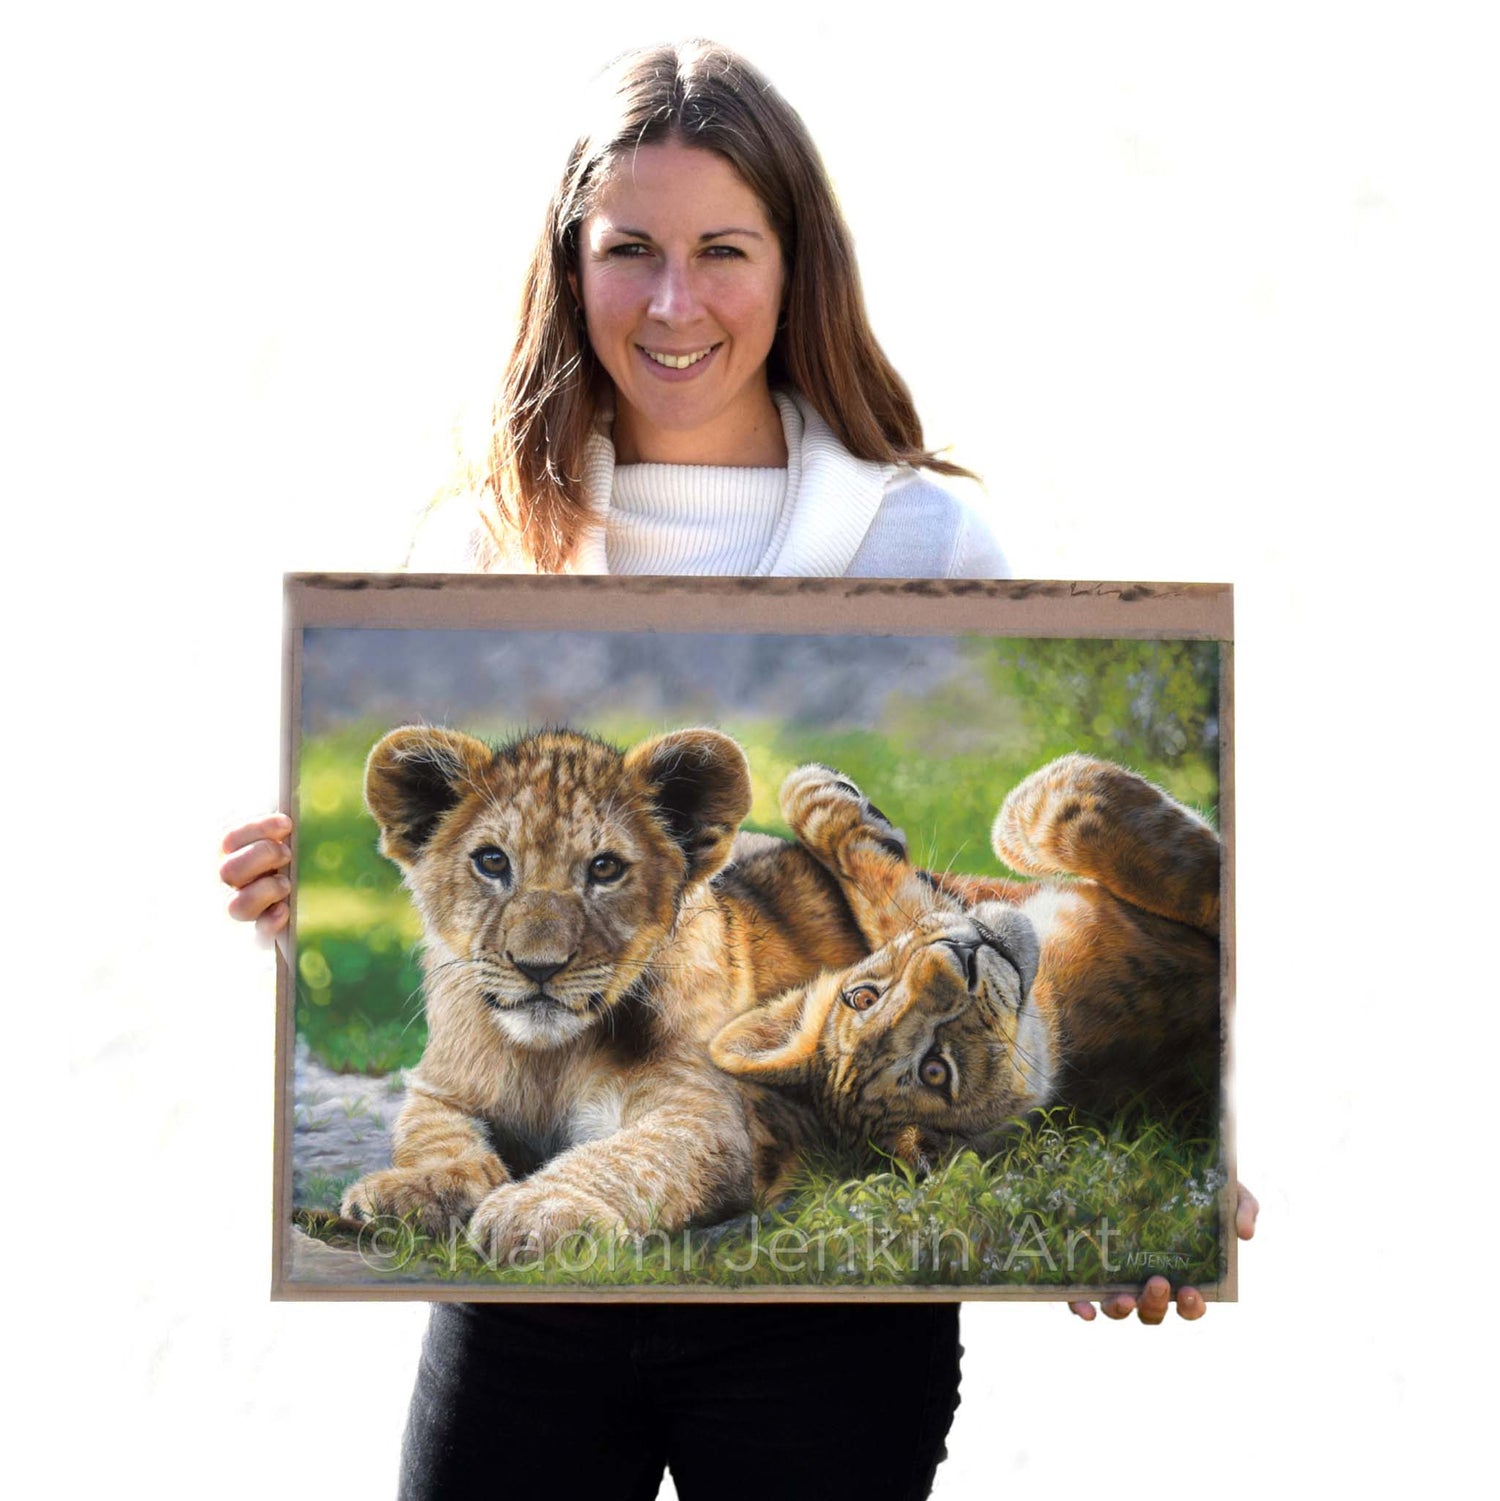 Wildlife artist Naomi Jenkin with her original lion painting "Lyin' Around".